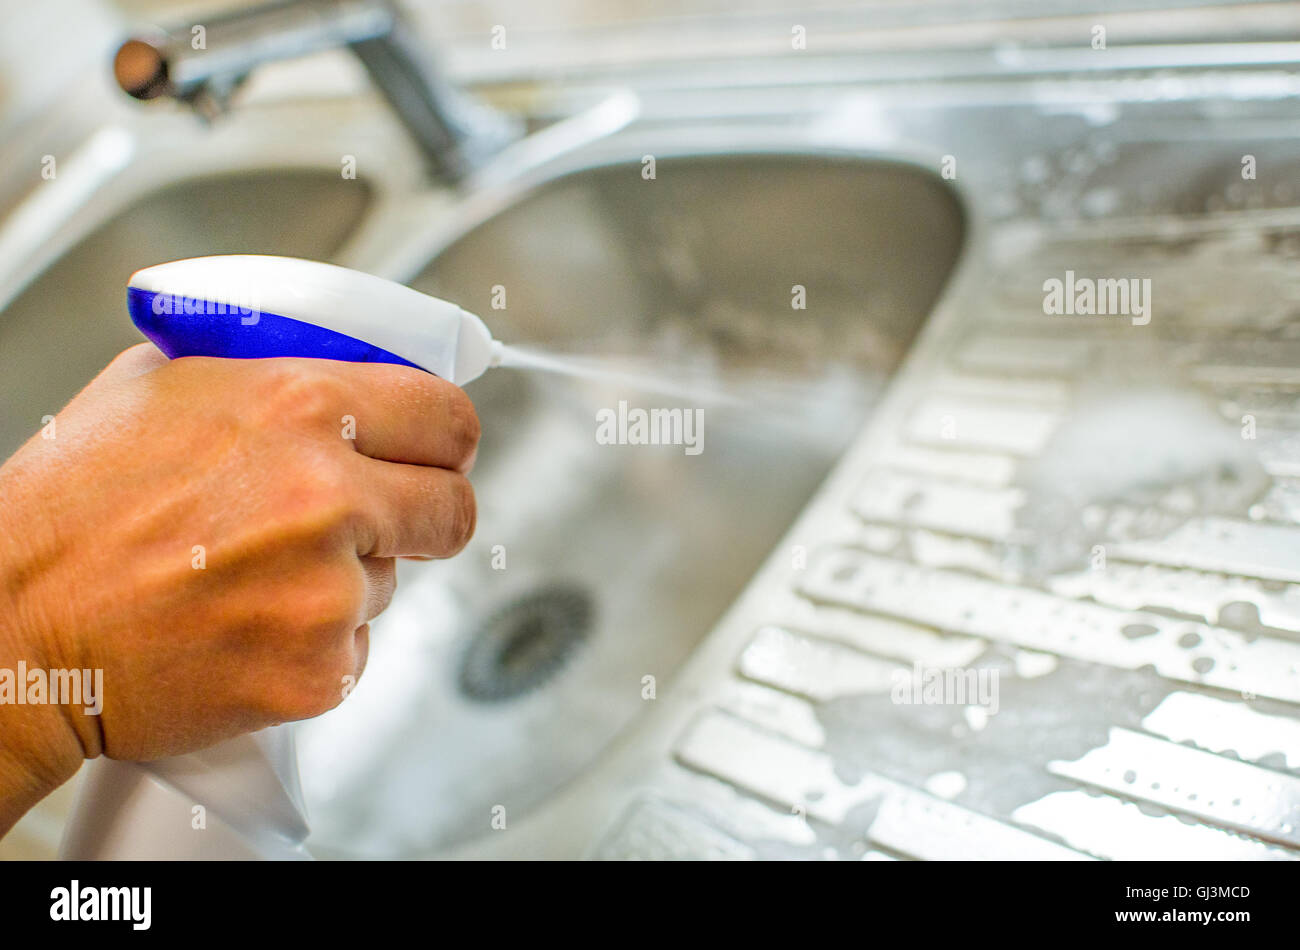 hand spray detergent on kitchen sink chores housekeeping Stock Photo